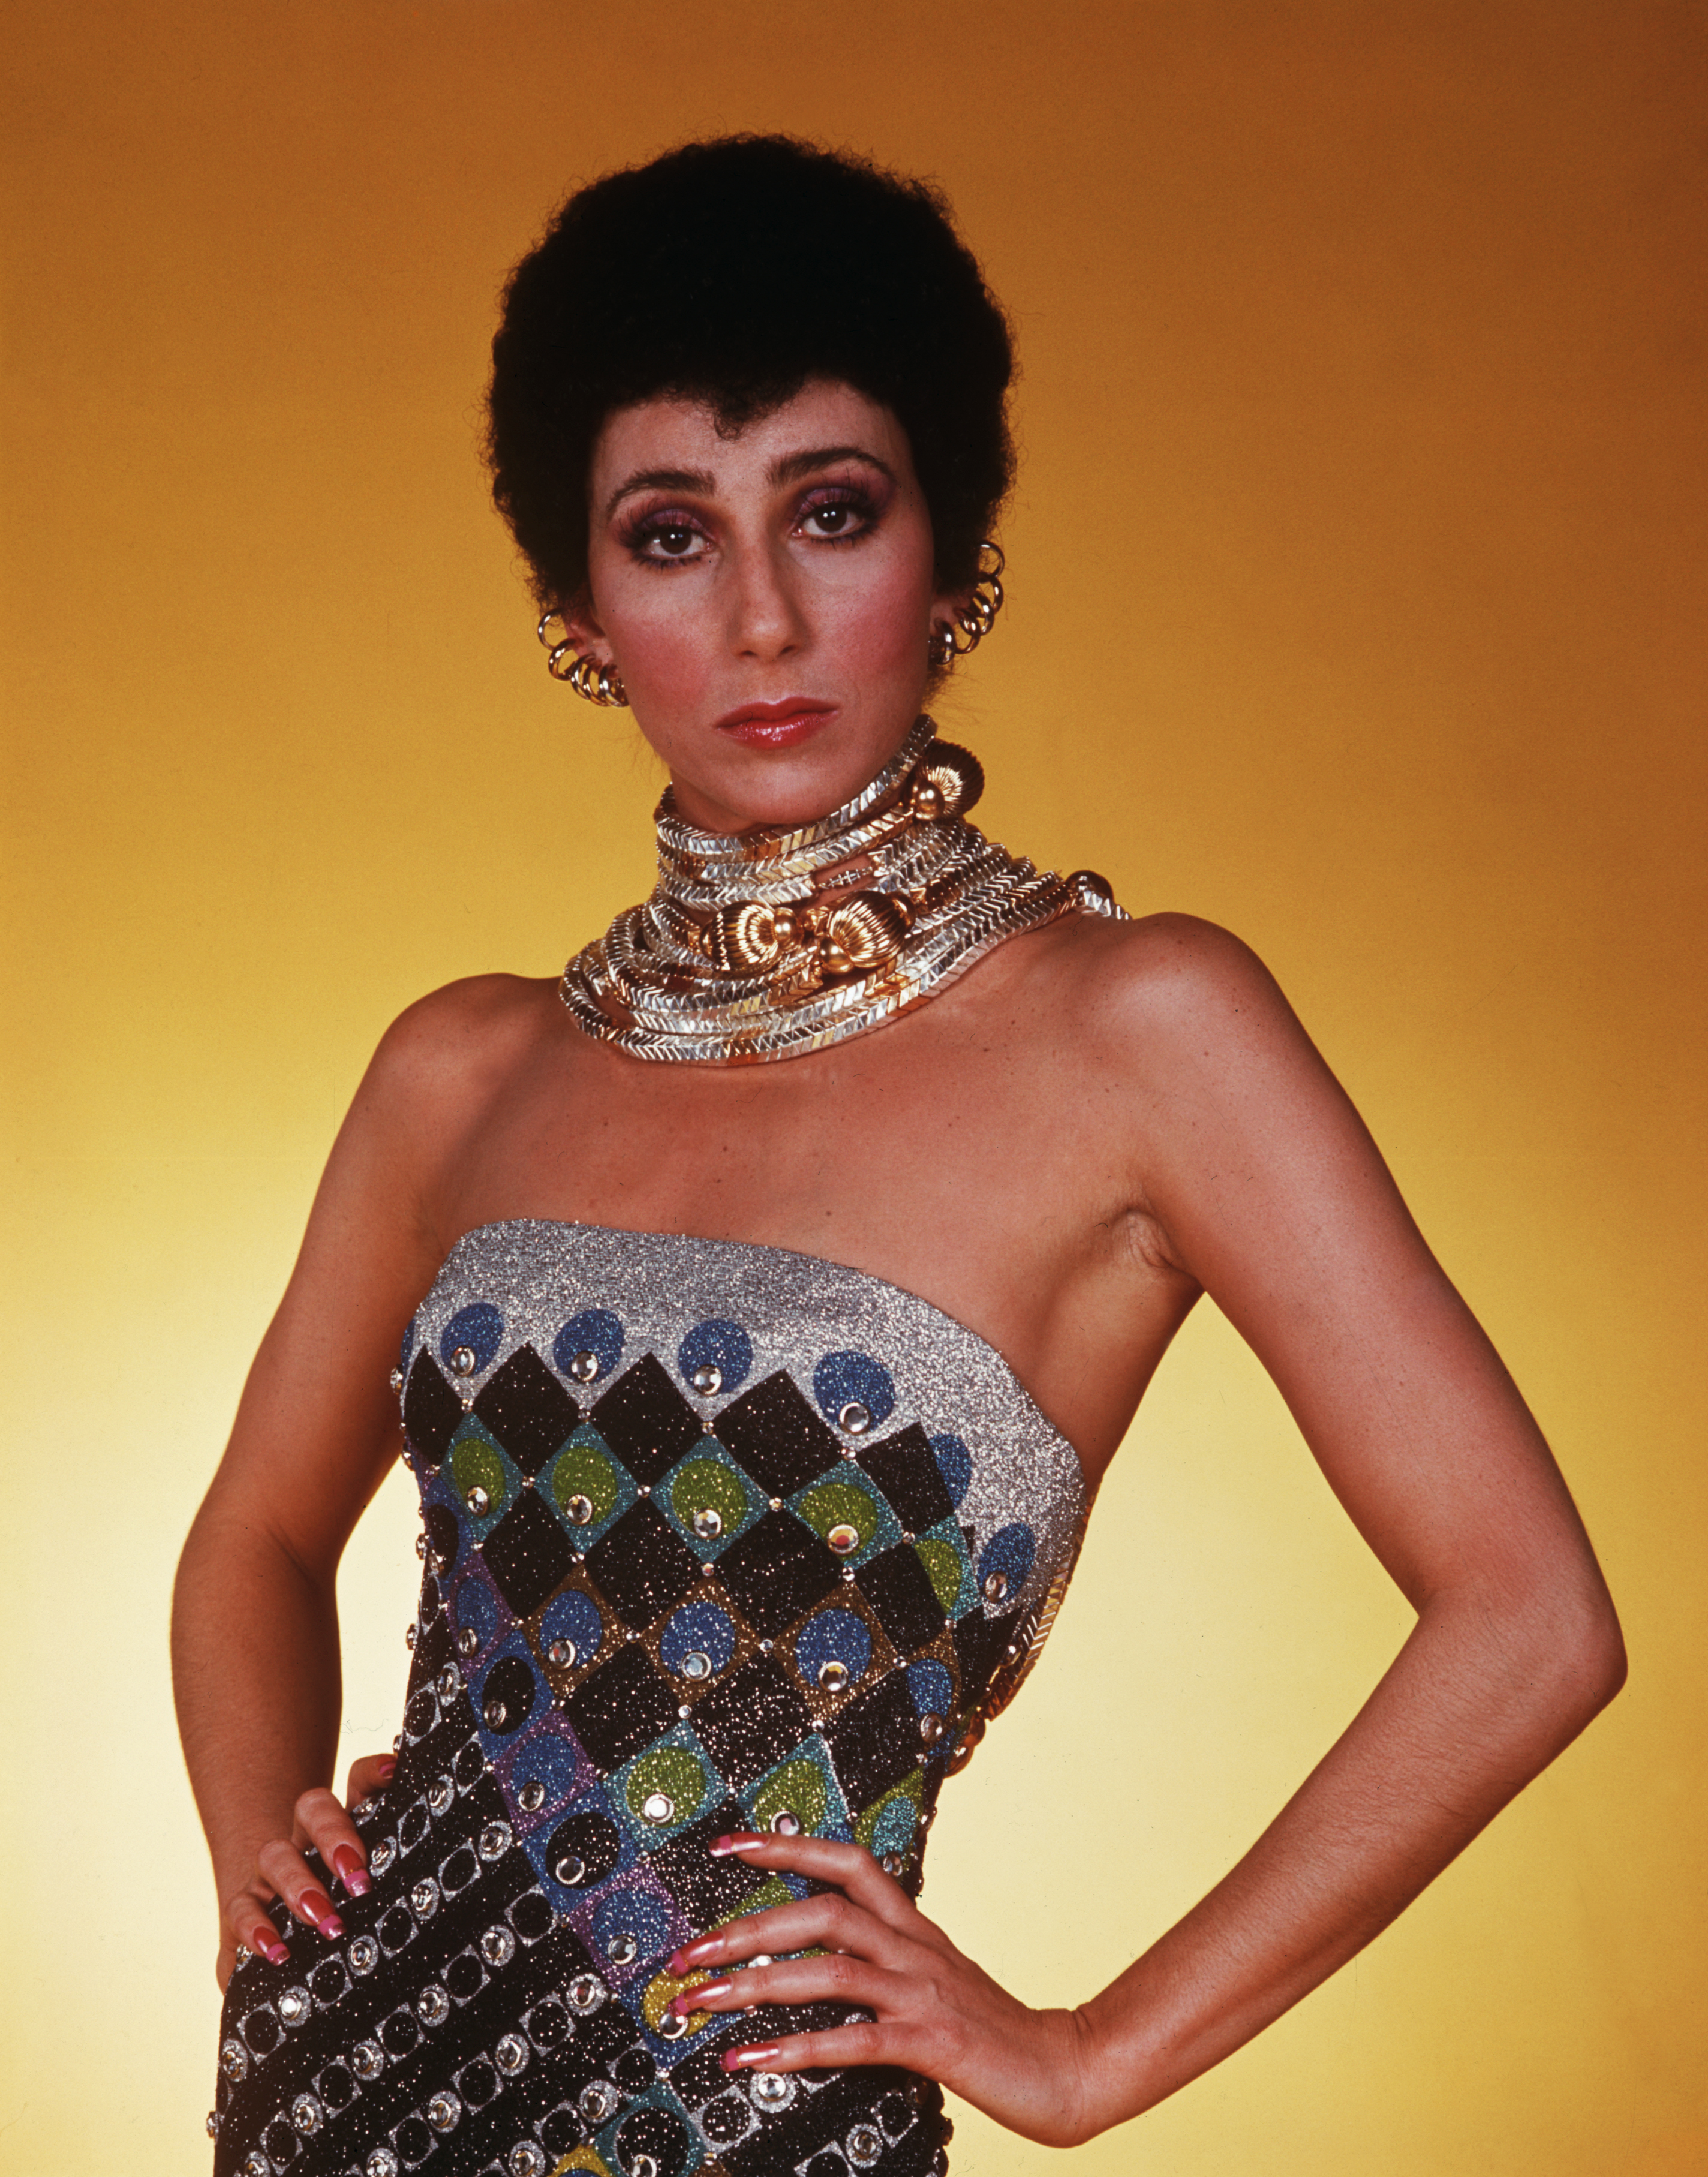 Cher en su programa de televisión "The Sonny and Cher Comedy Hour" en 1975 | Fuente: Getty Images